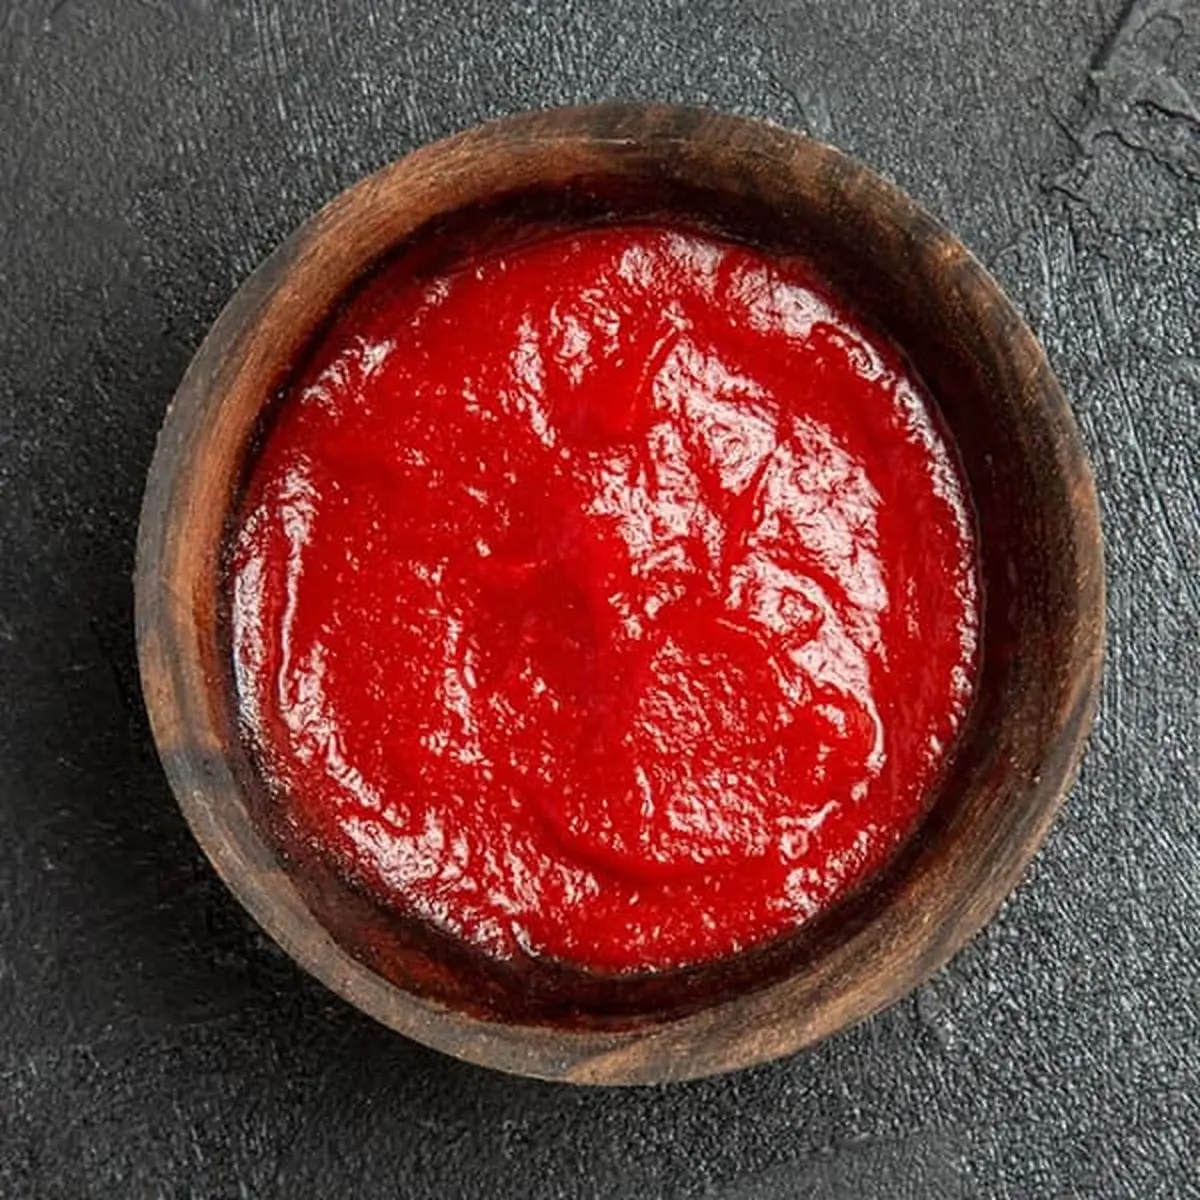 یه عمر رب گوجه فرنگی را اشتباه درست میکردیم | تکنیکهای حرفه ای درست کردن رب گوجه فرنگی | با این روش رب گوجه فرنگی قرمز و خوش رنگ داشته باش